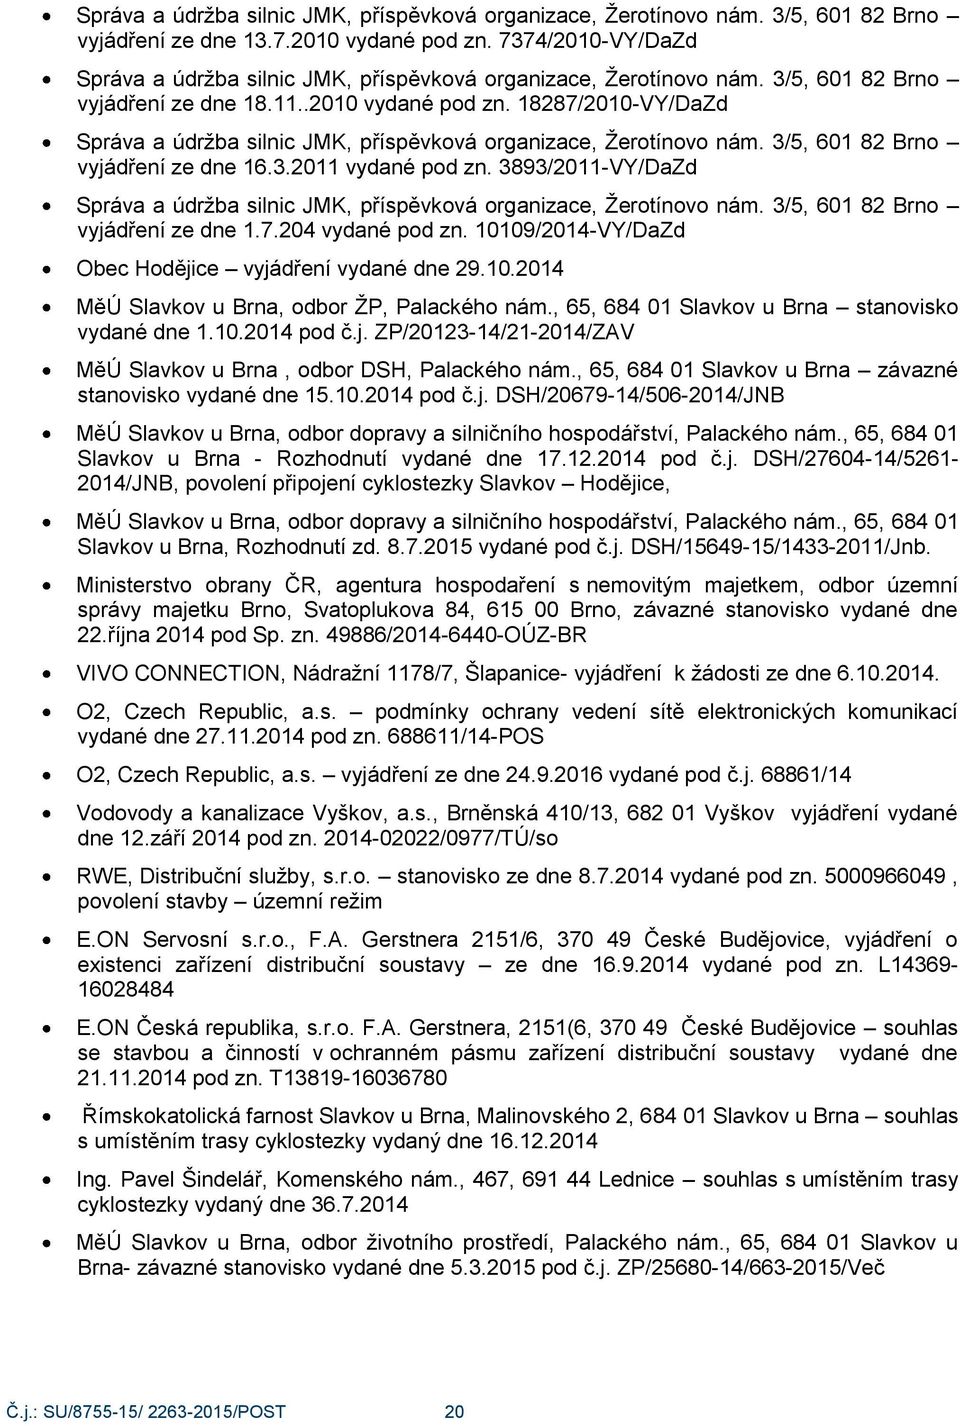 18287/2010-VY/DaZd Správa a údrţba silnic JMK, příspěvková organizace, Ţerotínovo nám. 3/5, 601 82 Brno vyjádření ze dne 16.3.2011 vydané pod zn.